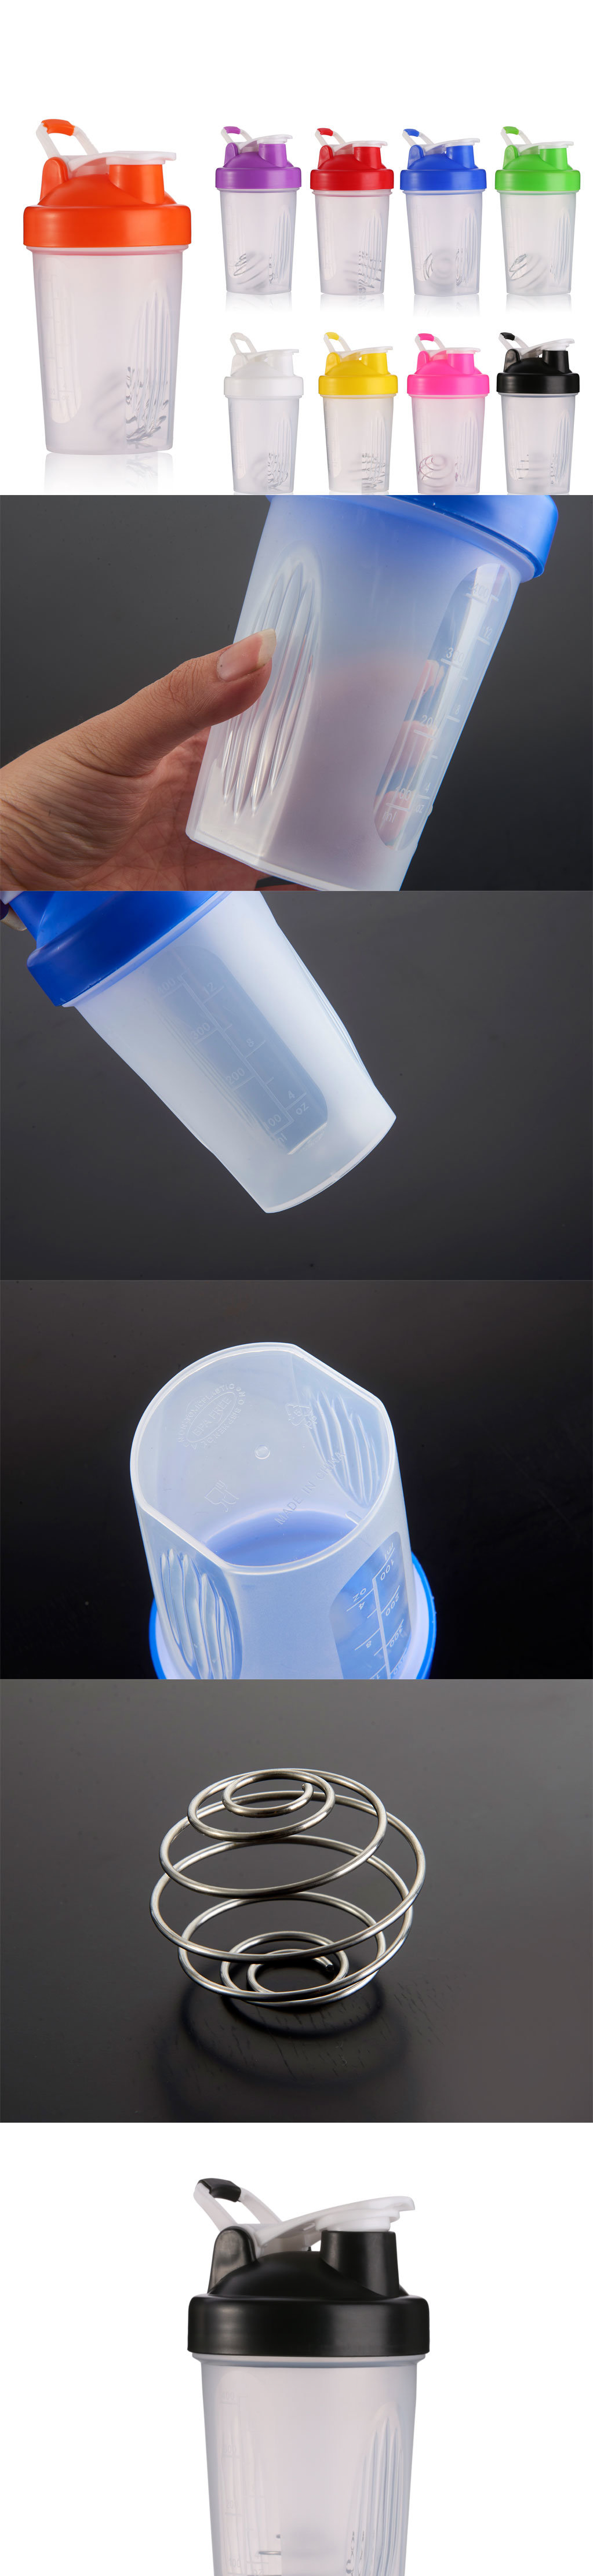 400ml 16oz Plastic Shaker Bottles Joyshaker Cups Sport Water Bottles